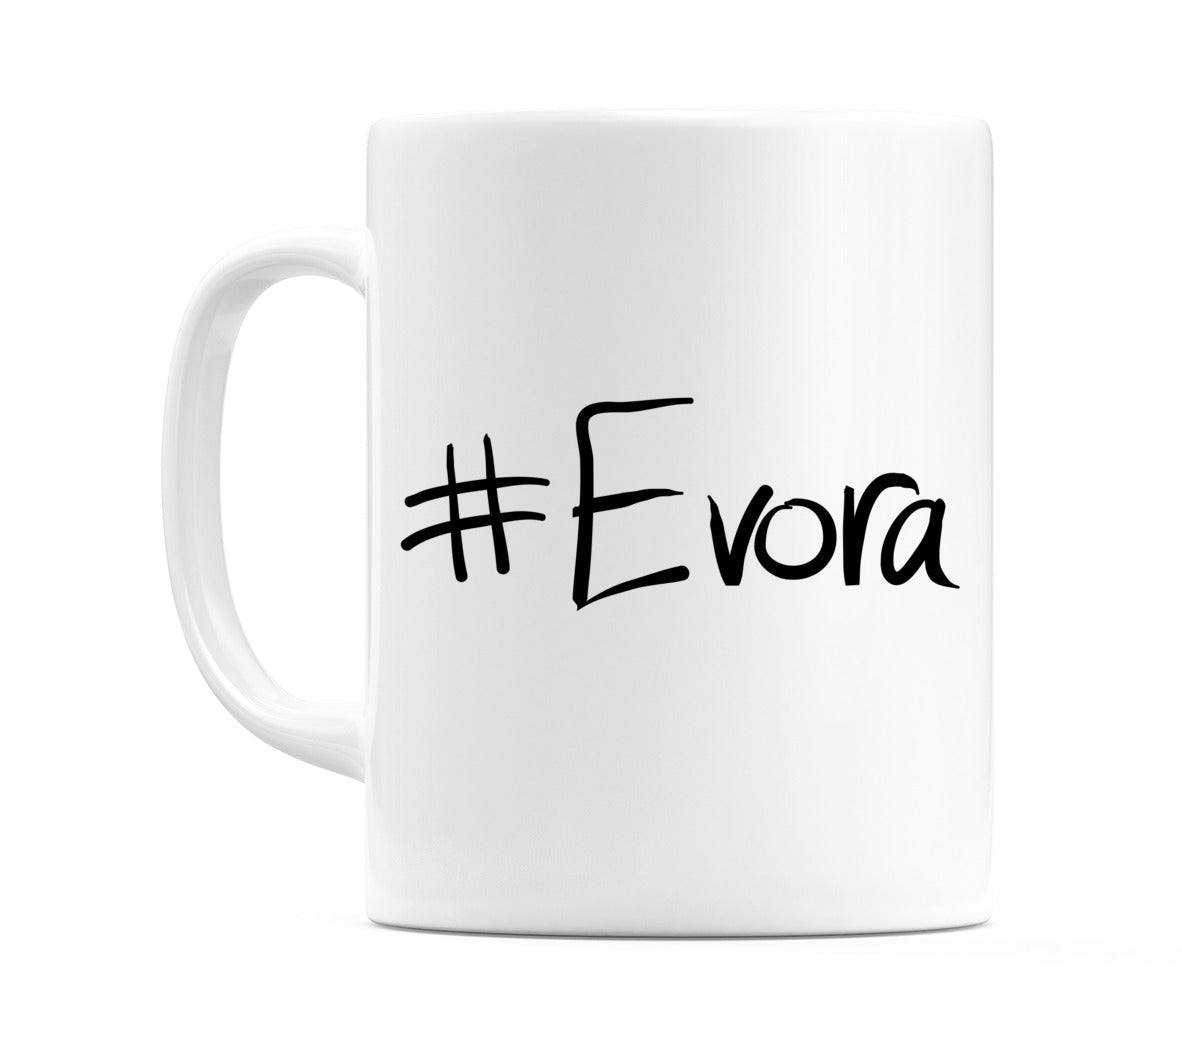 #Evora Mug